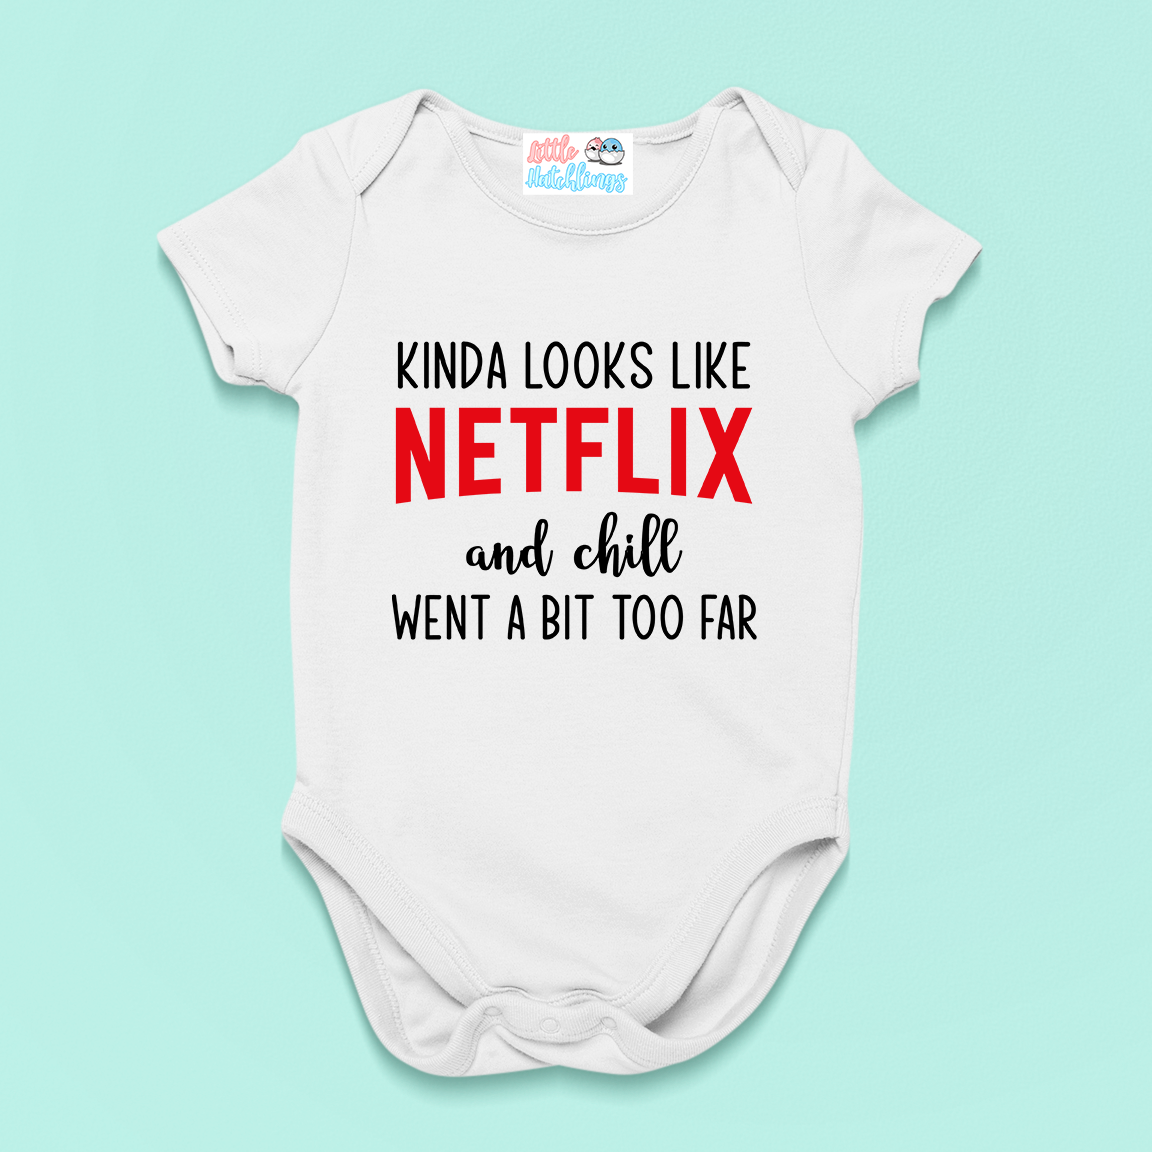 Netflix & Chill Went A Bit To Far Baby Announcement White Onesie